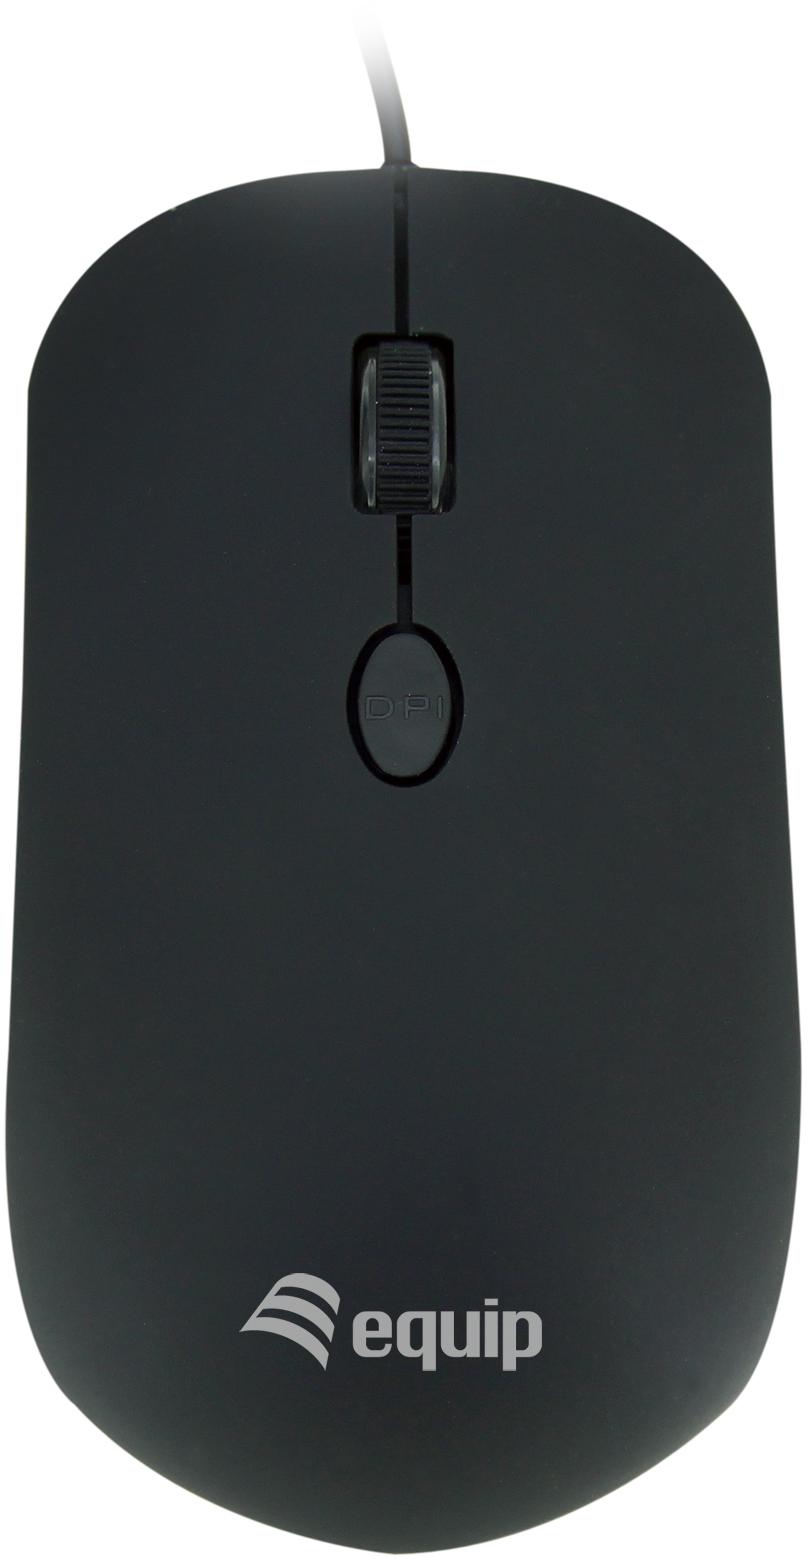 Equip - Ratón Equip Comfort USB Negro